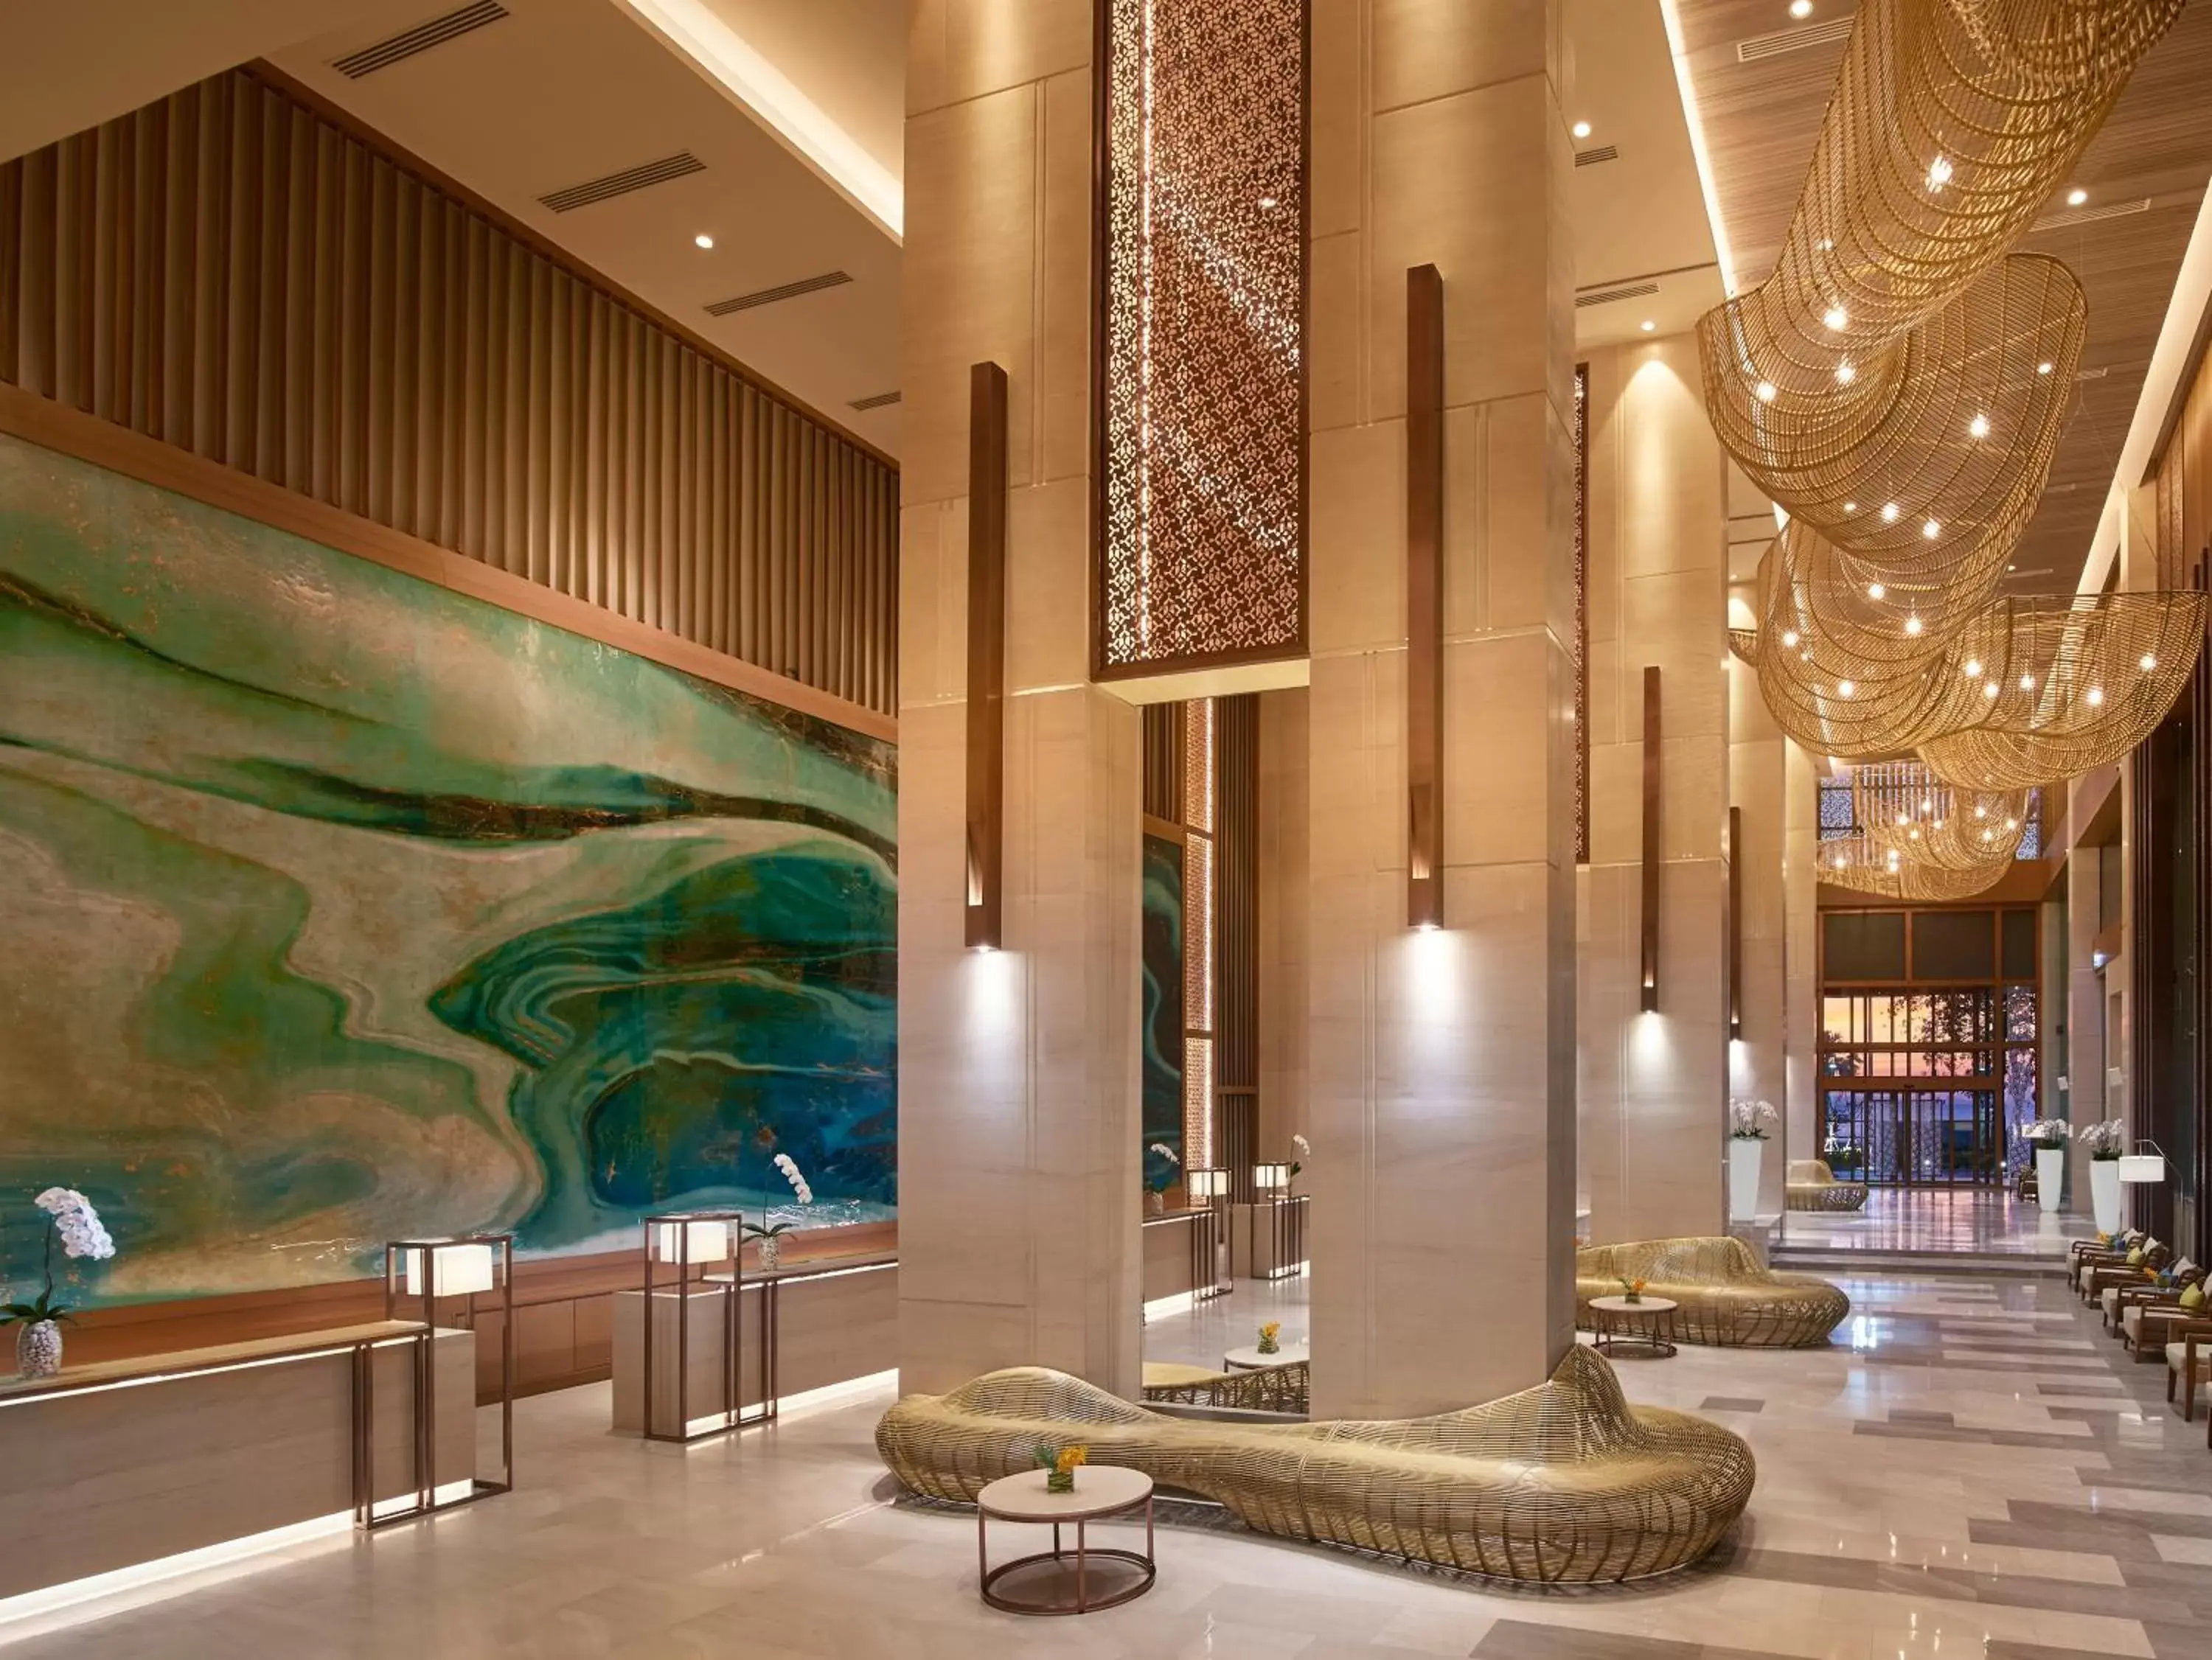 Lobby or reception, Lobby/Reception in Amari Pattaya